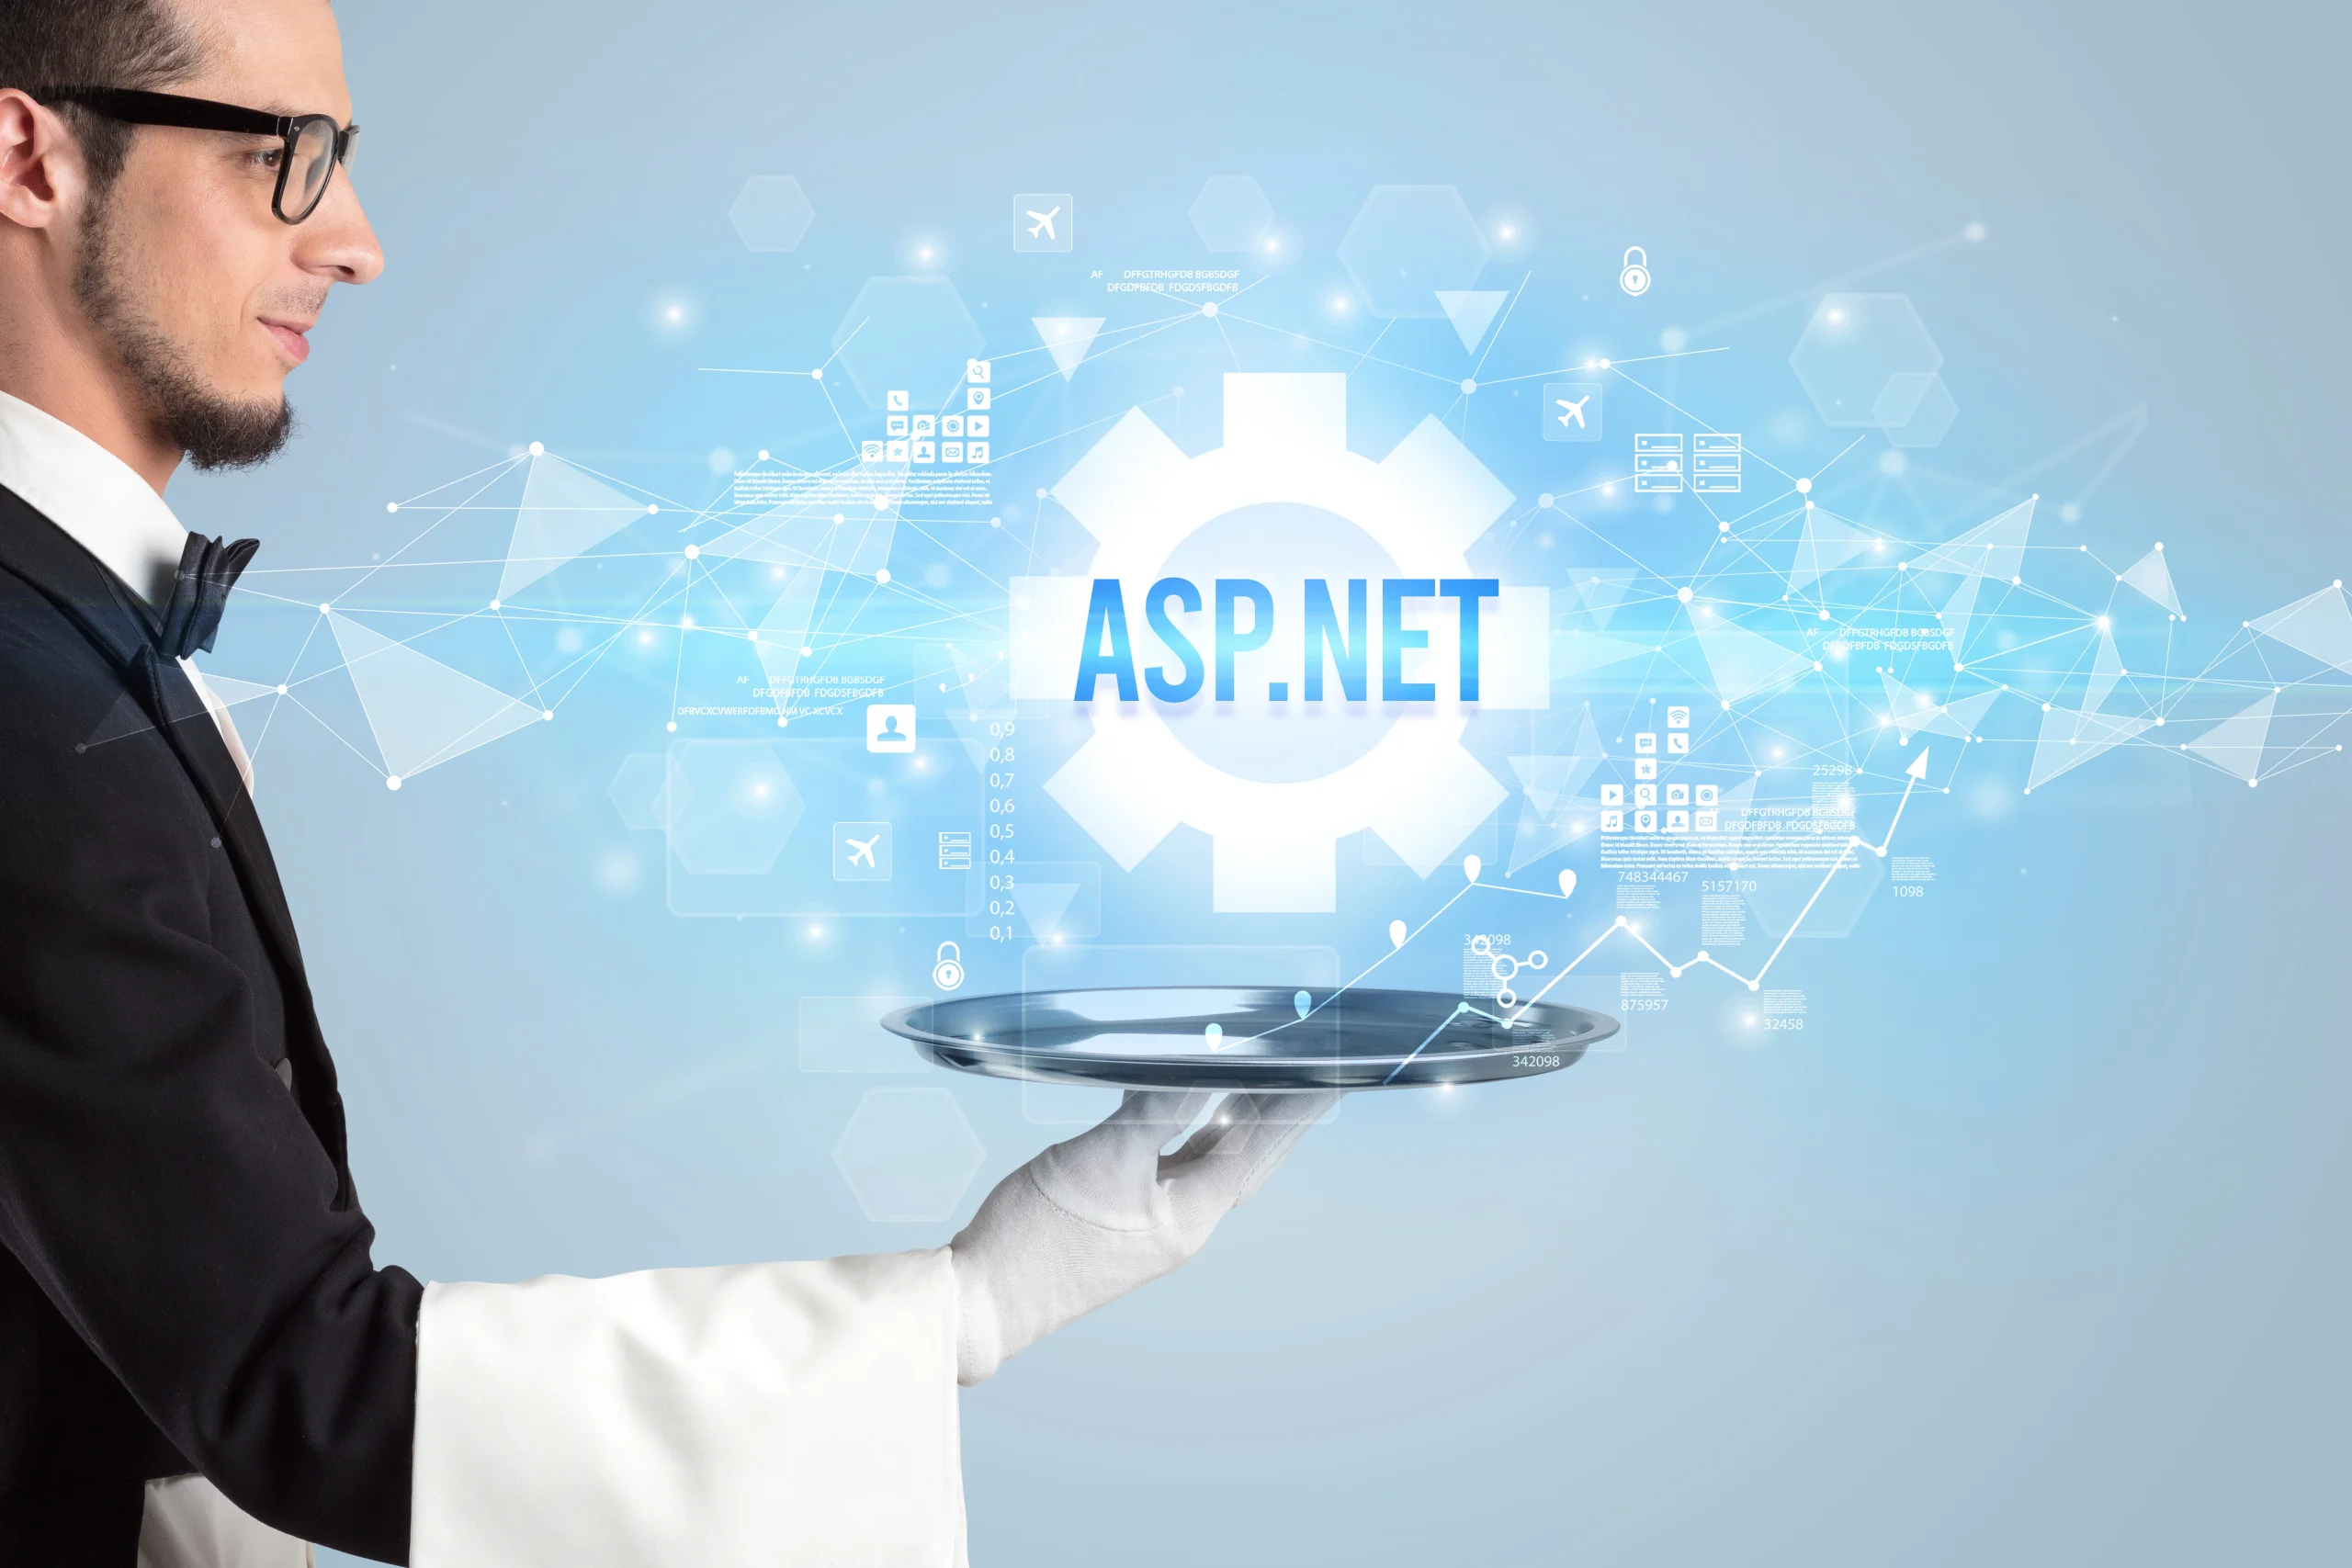 asp.net / .net core hosting plan comparison